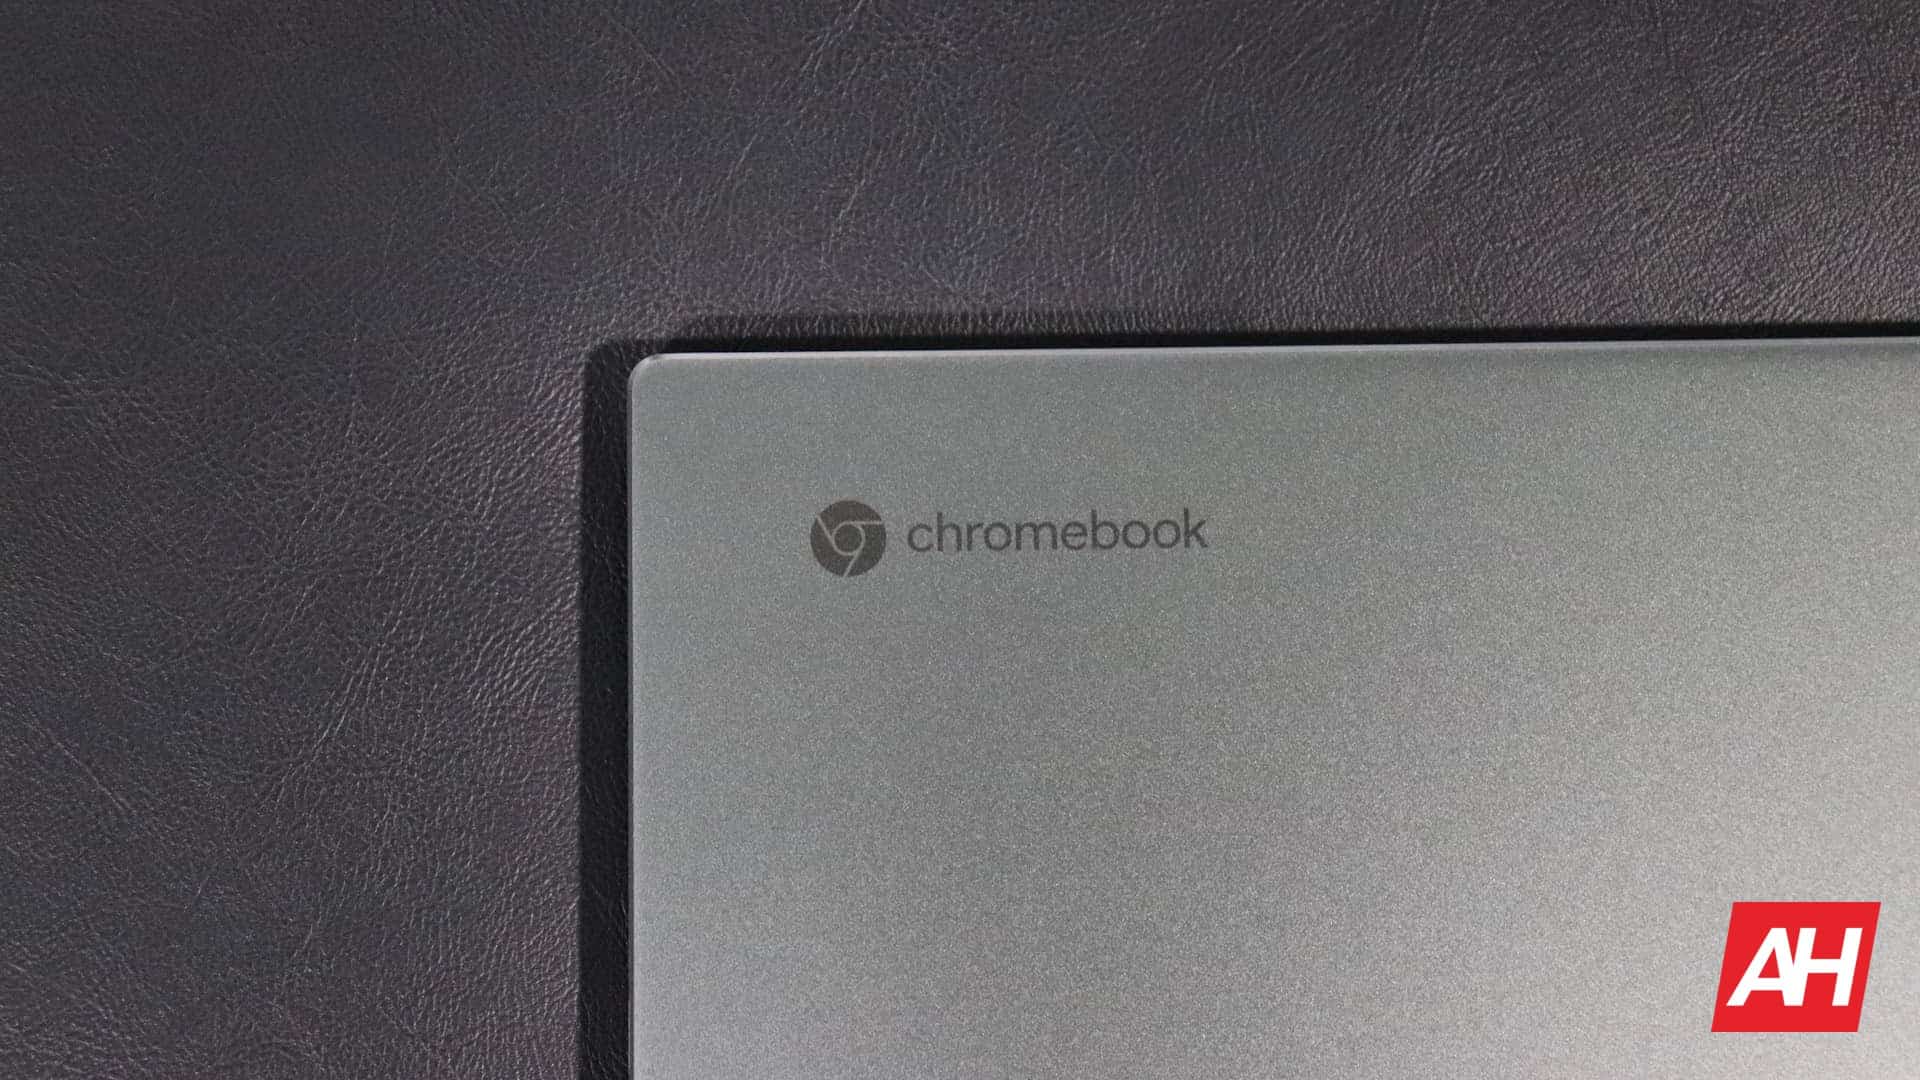 Chromebook получает новую функцию контроллеров для геймеров через Xbox